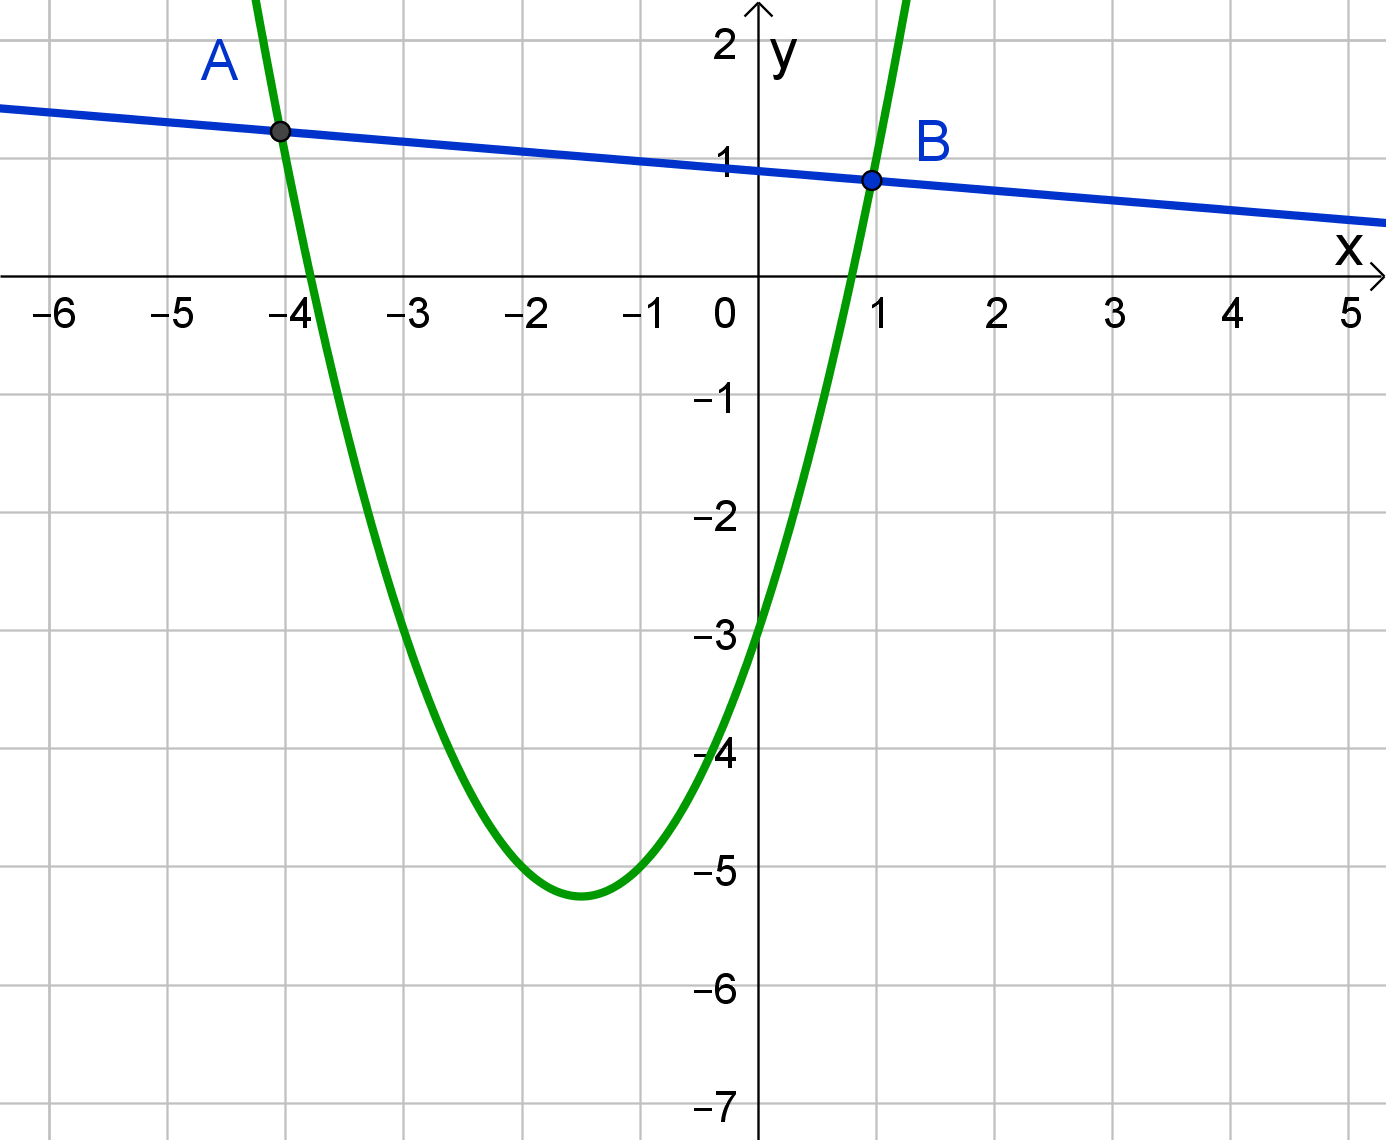 parabola i pravac sijeku se u dvjema točkama; pravac je sekanta parabole.